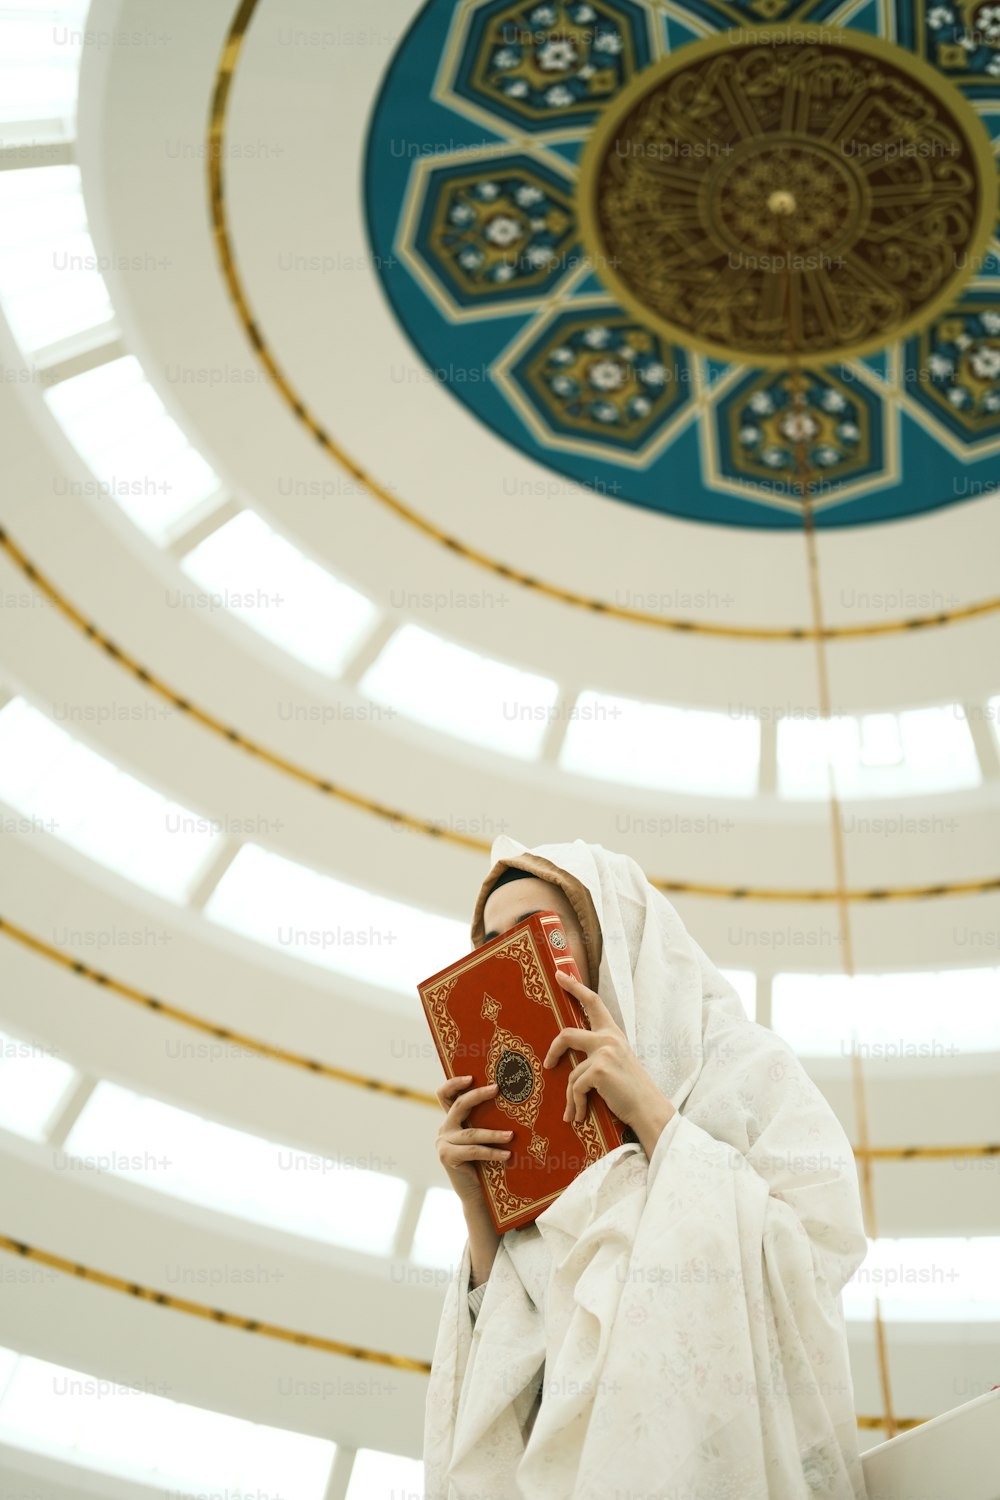 Une femme en robe blanche tenant un livre rouge